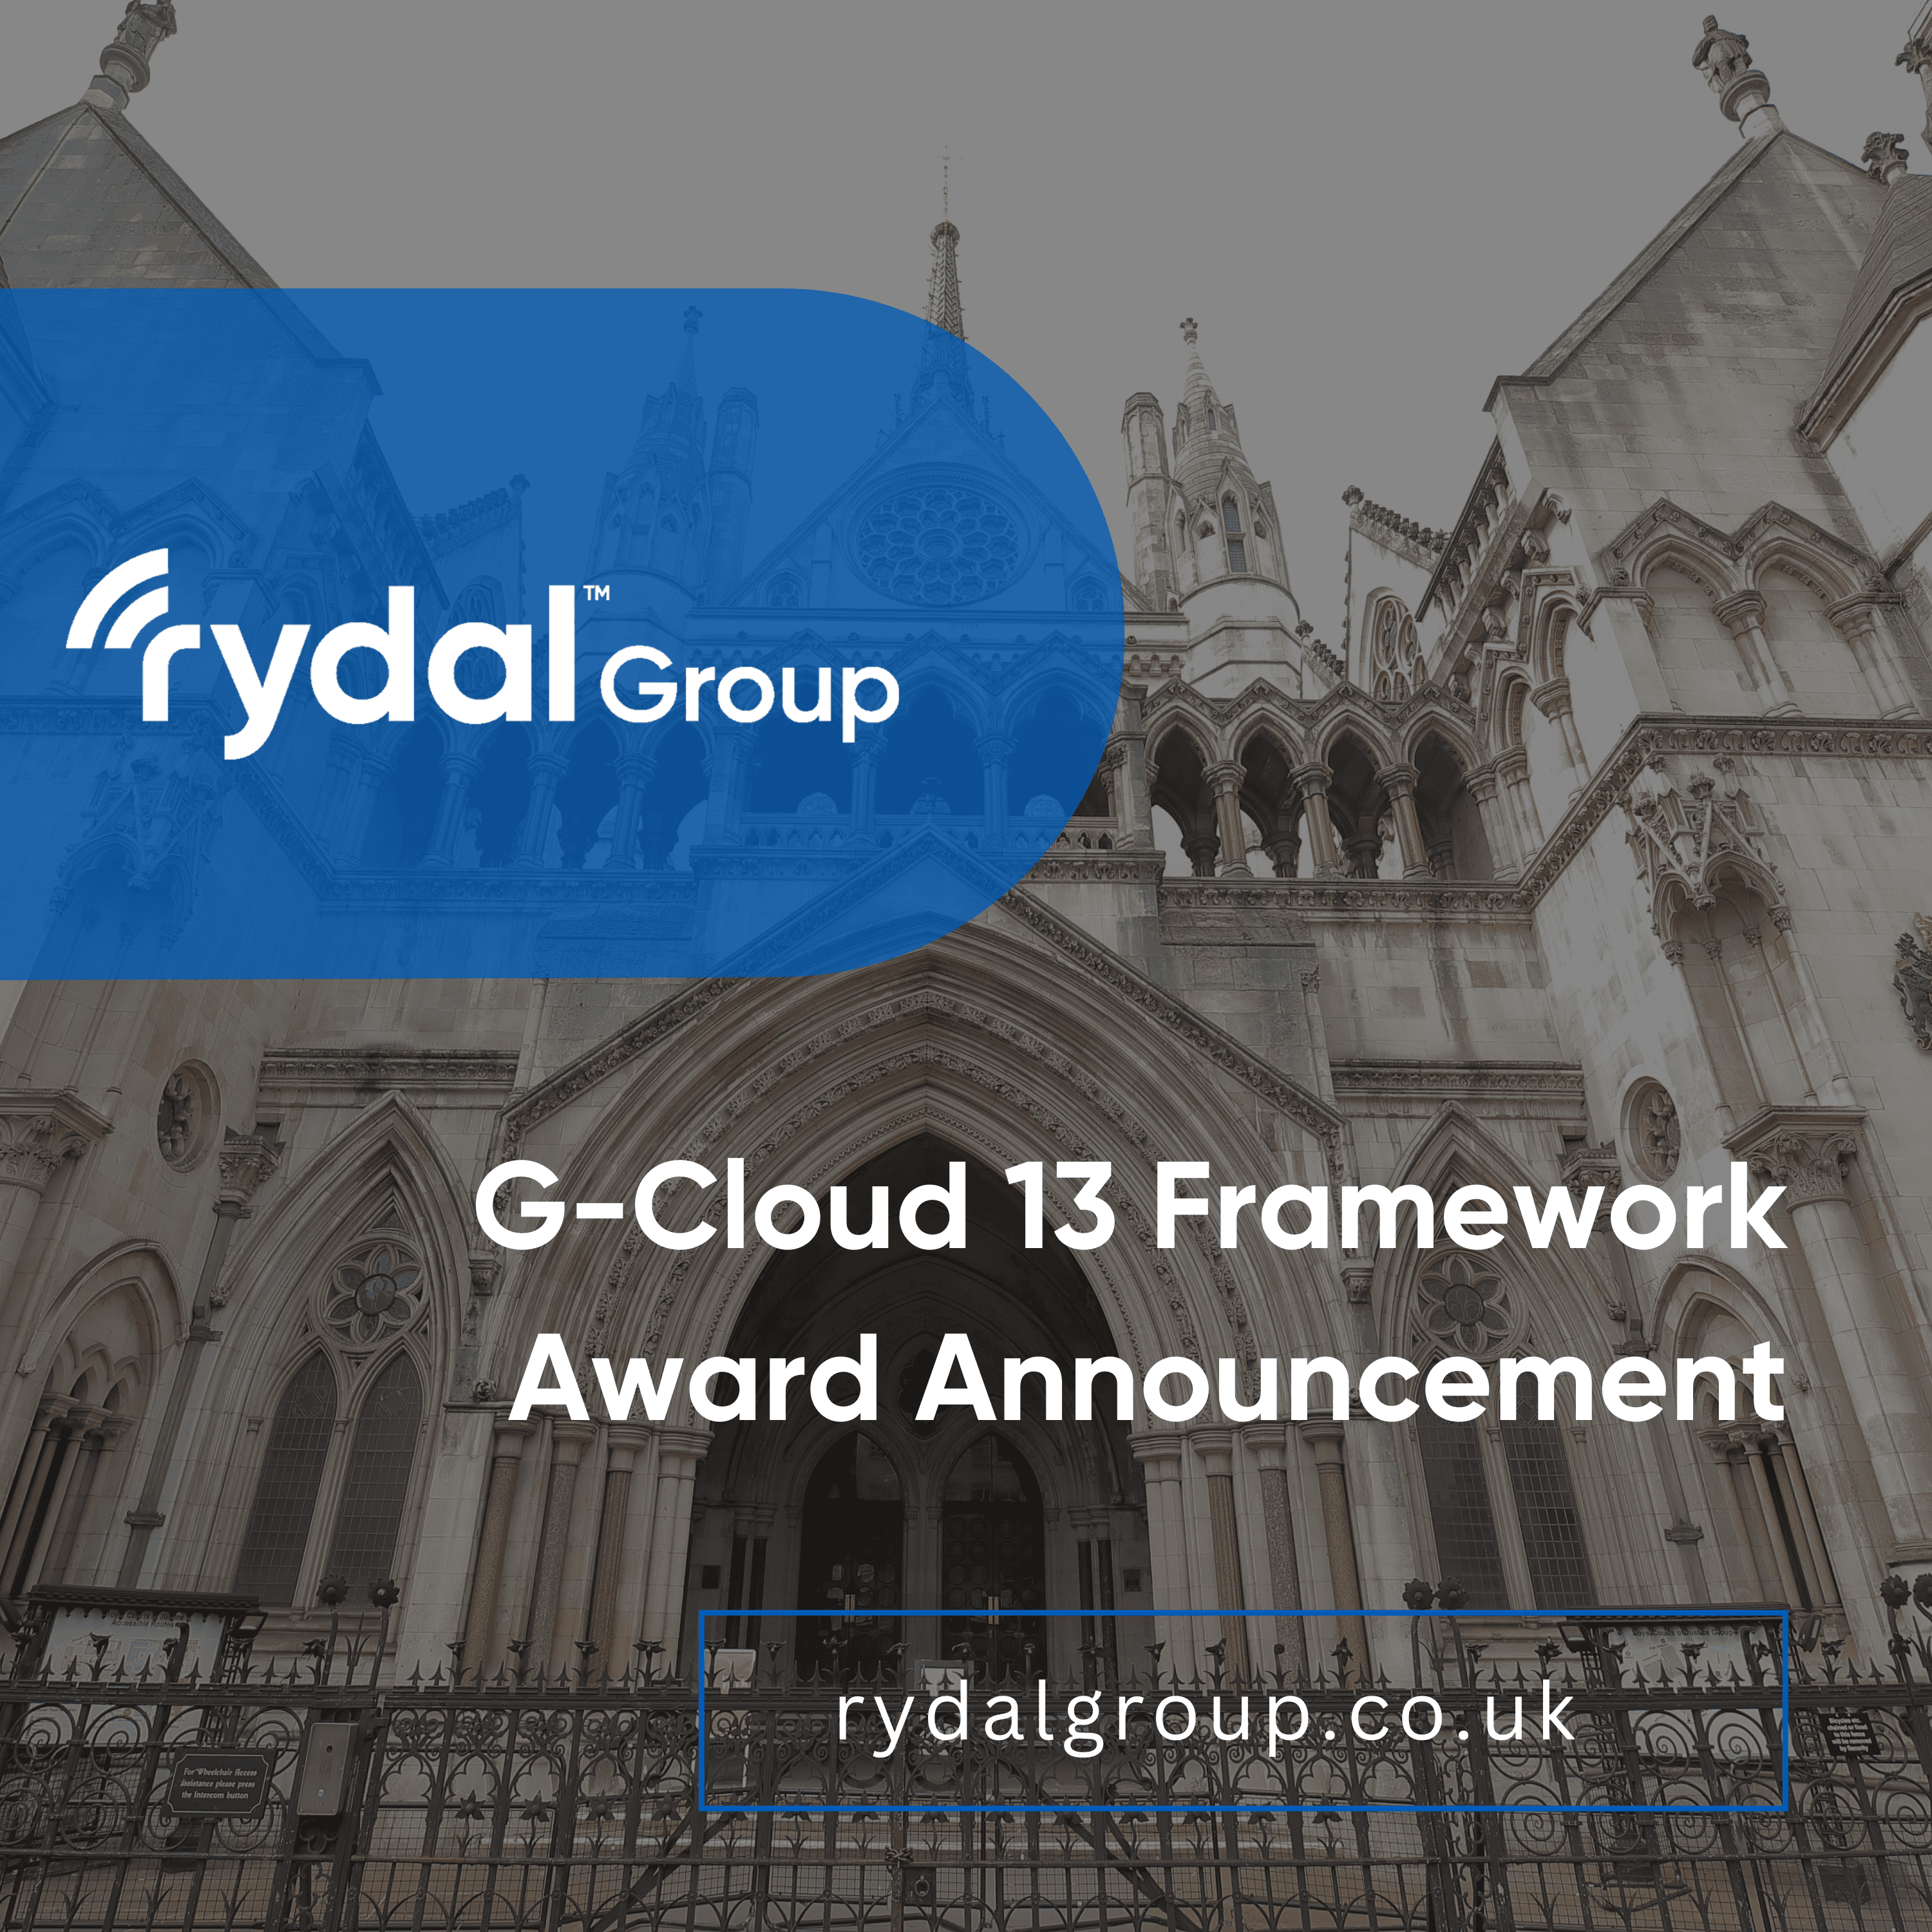 G-Cloud 13 Framework Award Announcement